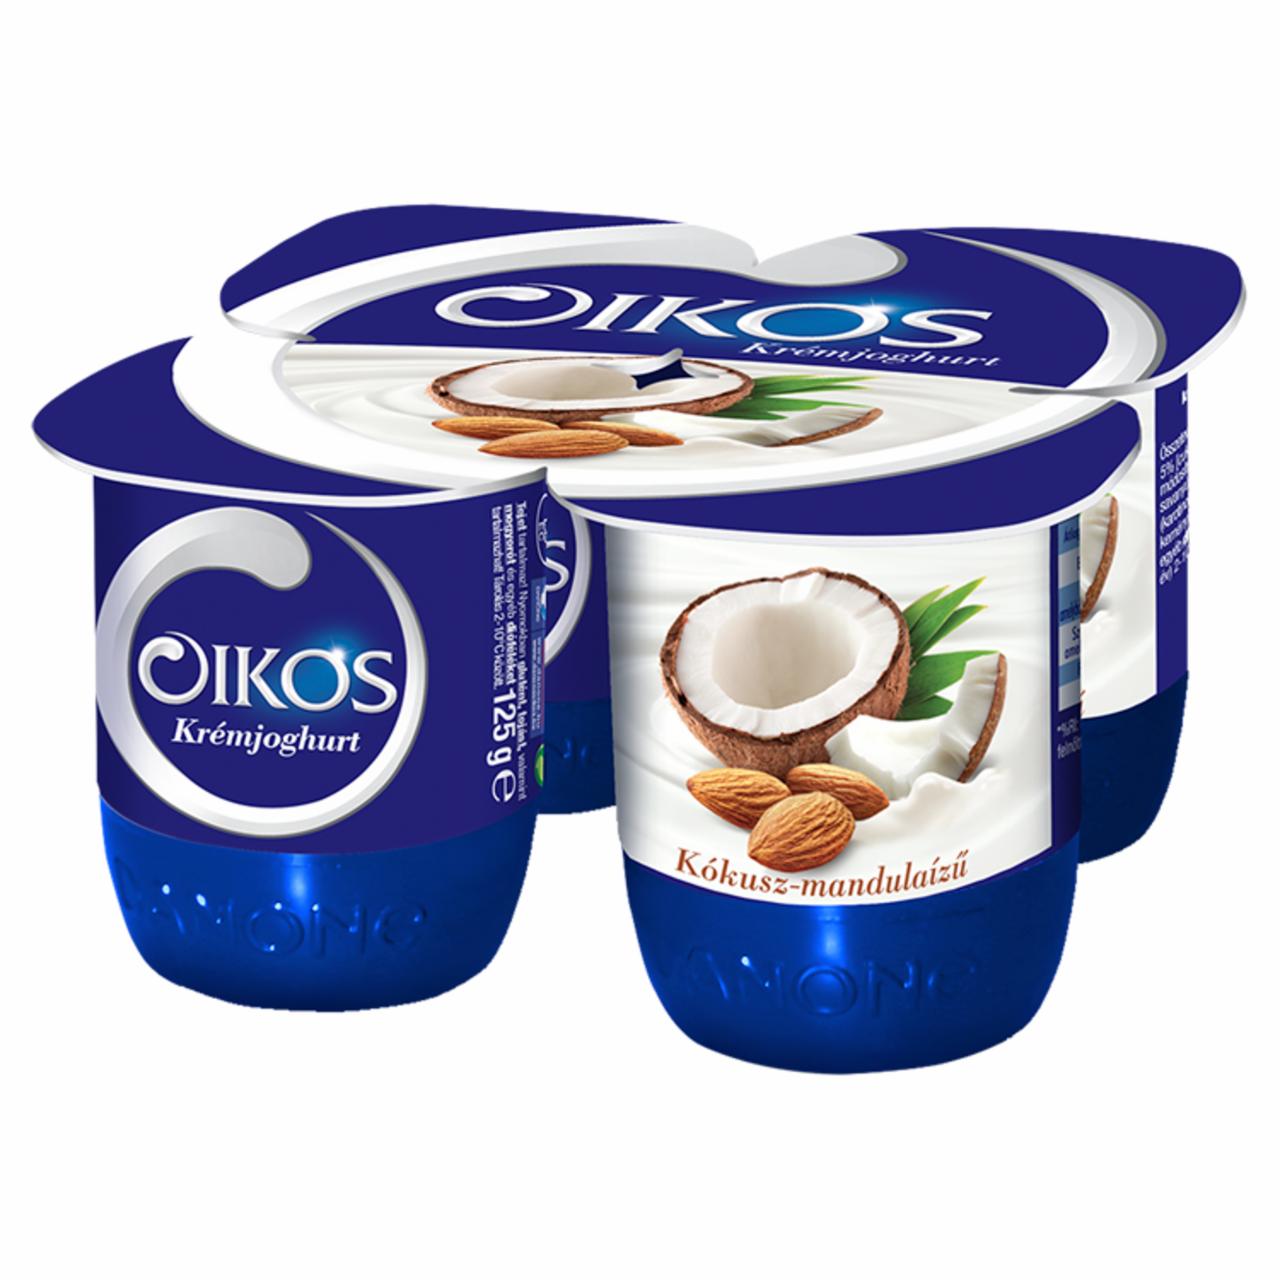 Képek - Danone Oikos Görög kókusz-mandulaízű élőflórás krémjoghurt 4 x 125 g